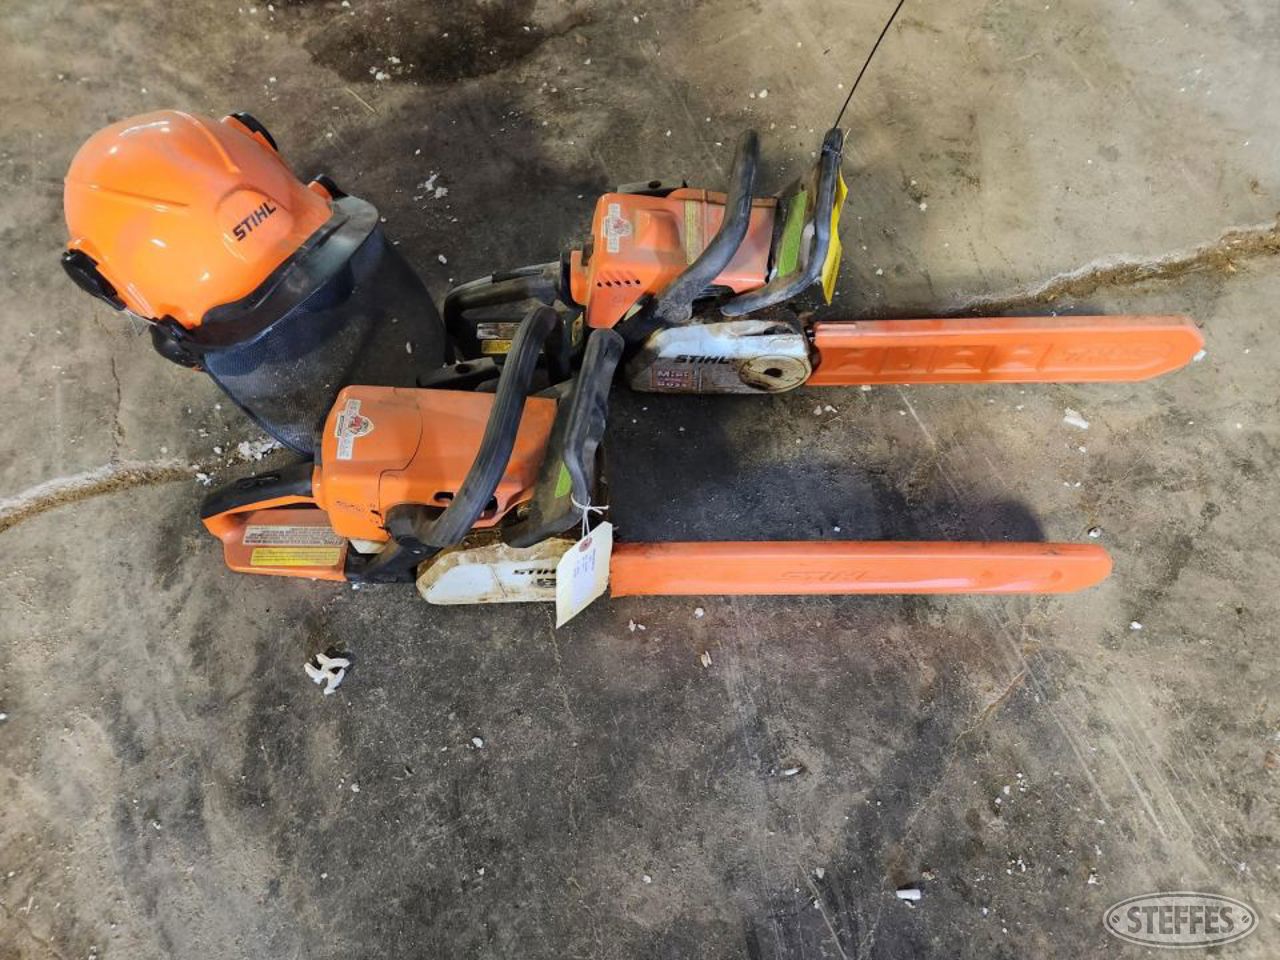 (2) Stihl chain saws